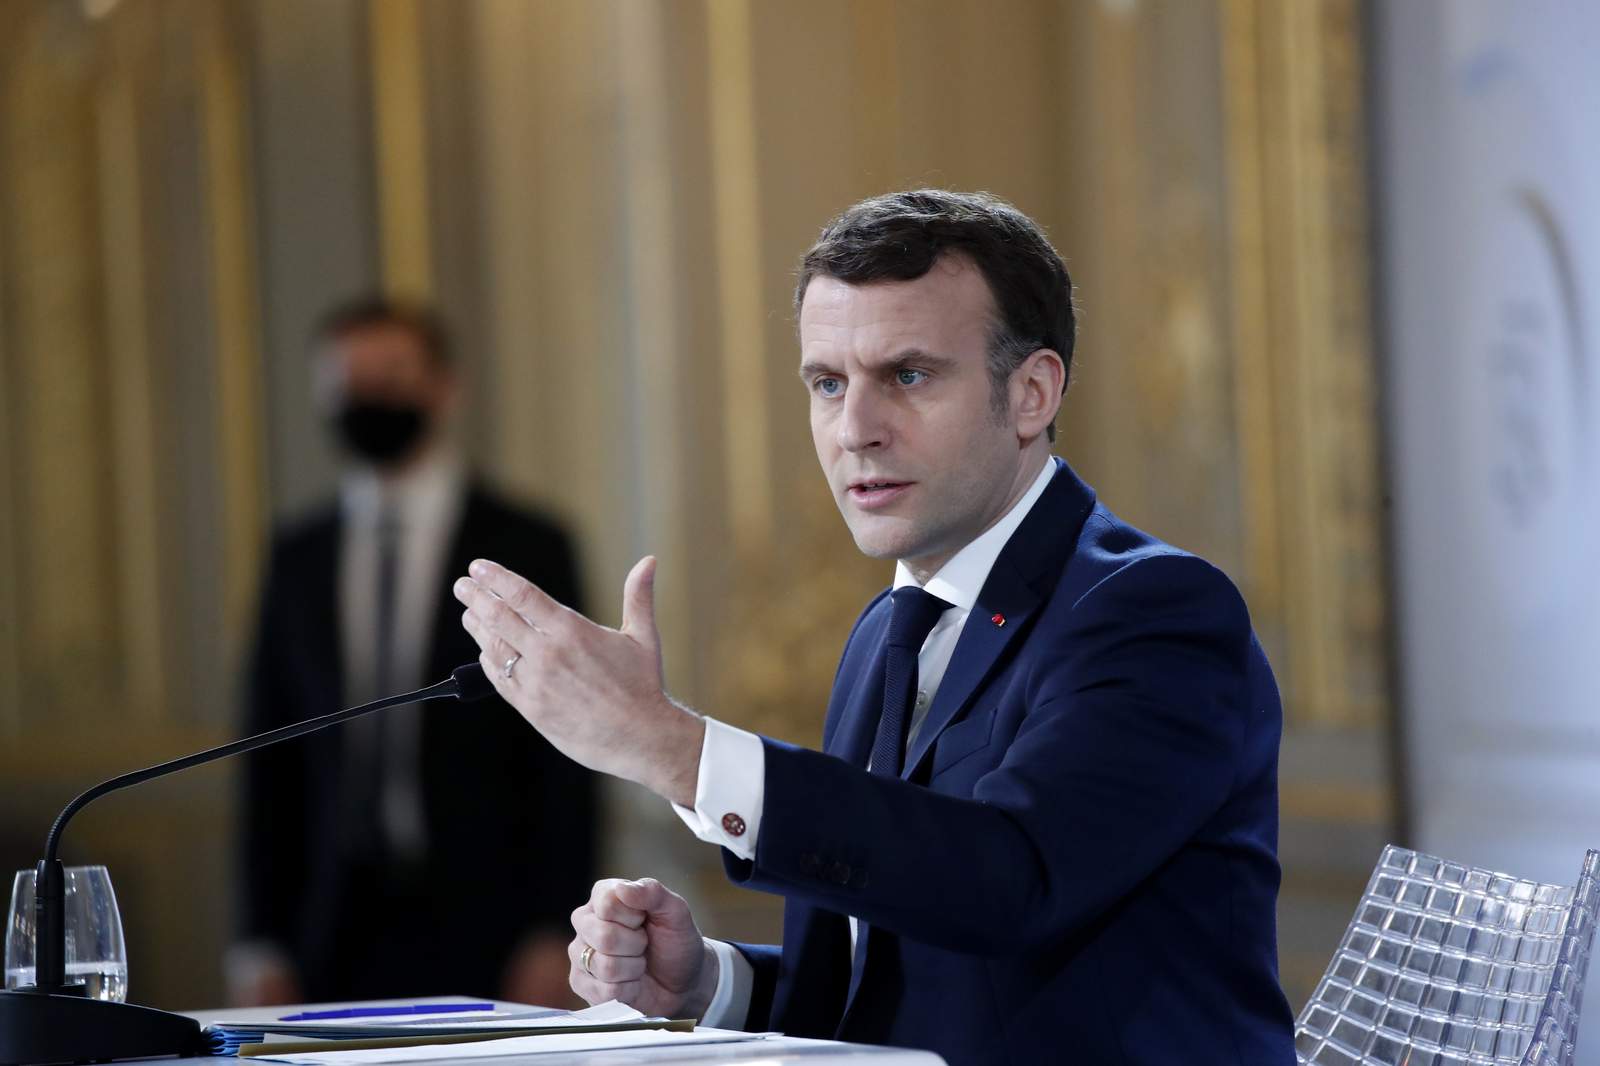 France, West Africa step up counterterrorism efforts